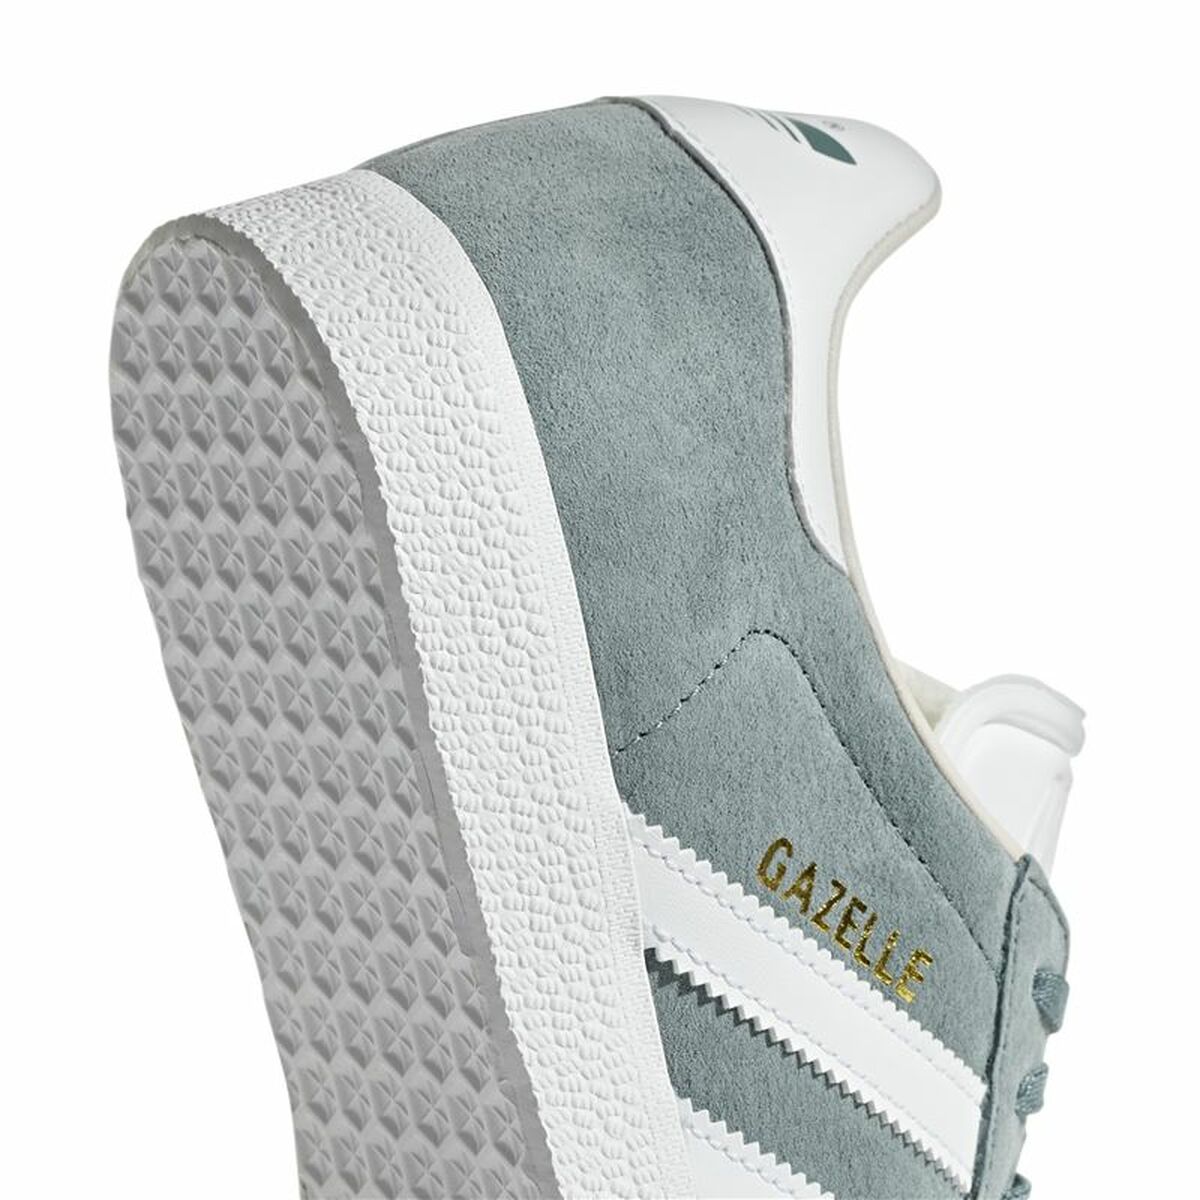 Scarpe Sportive da Donna Adidas Originals Gazelle Verde